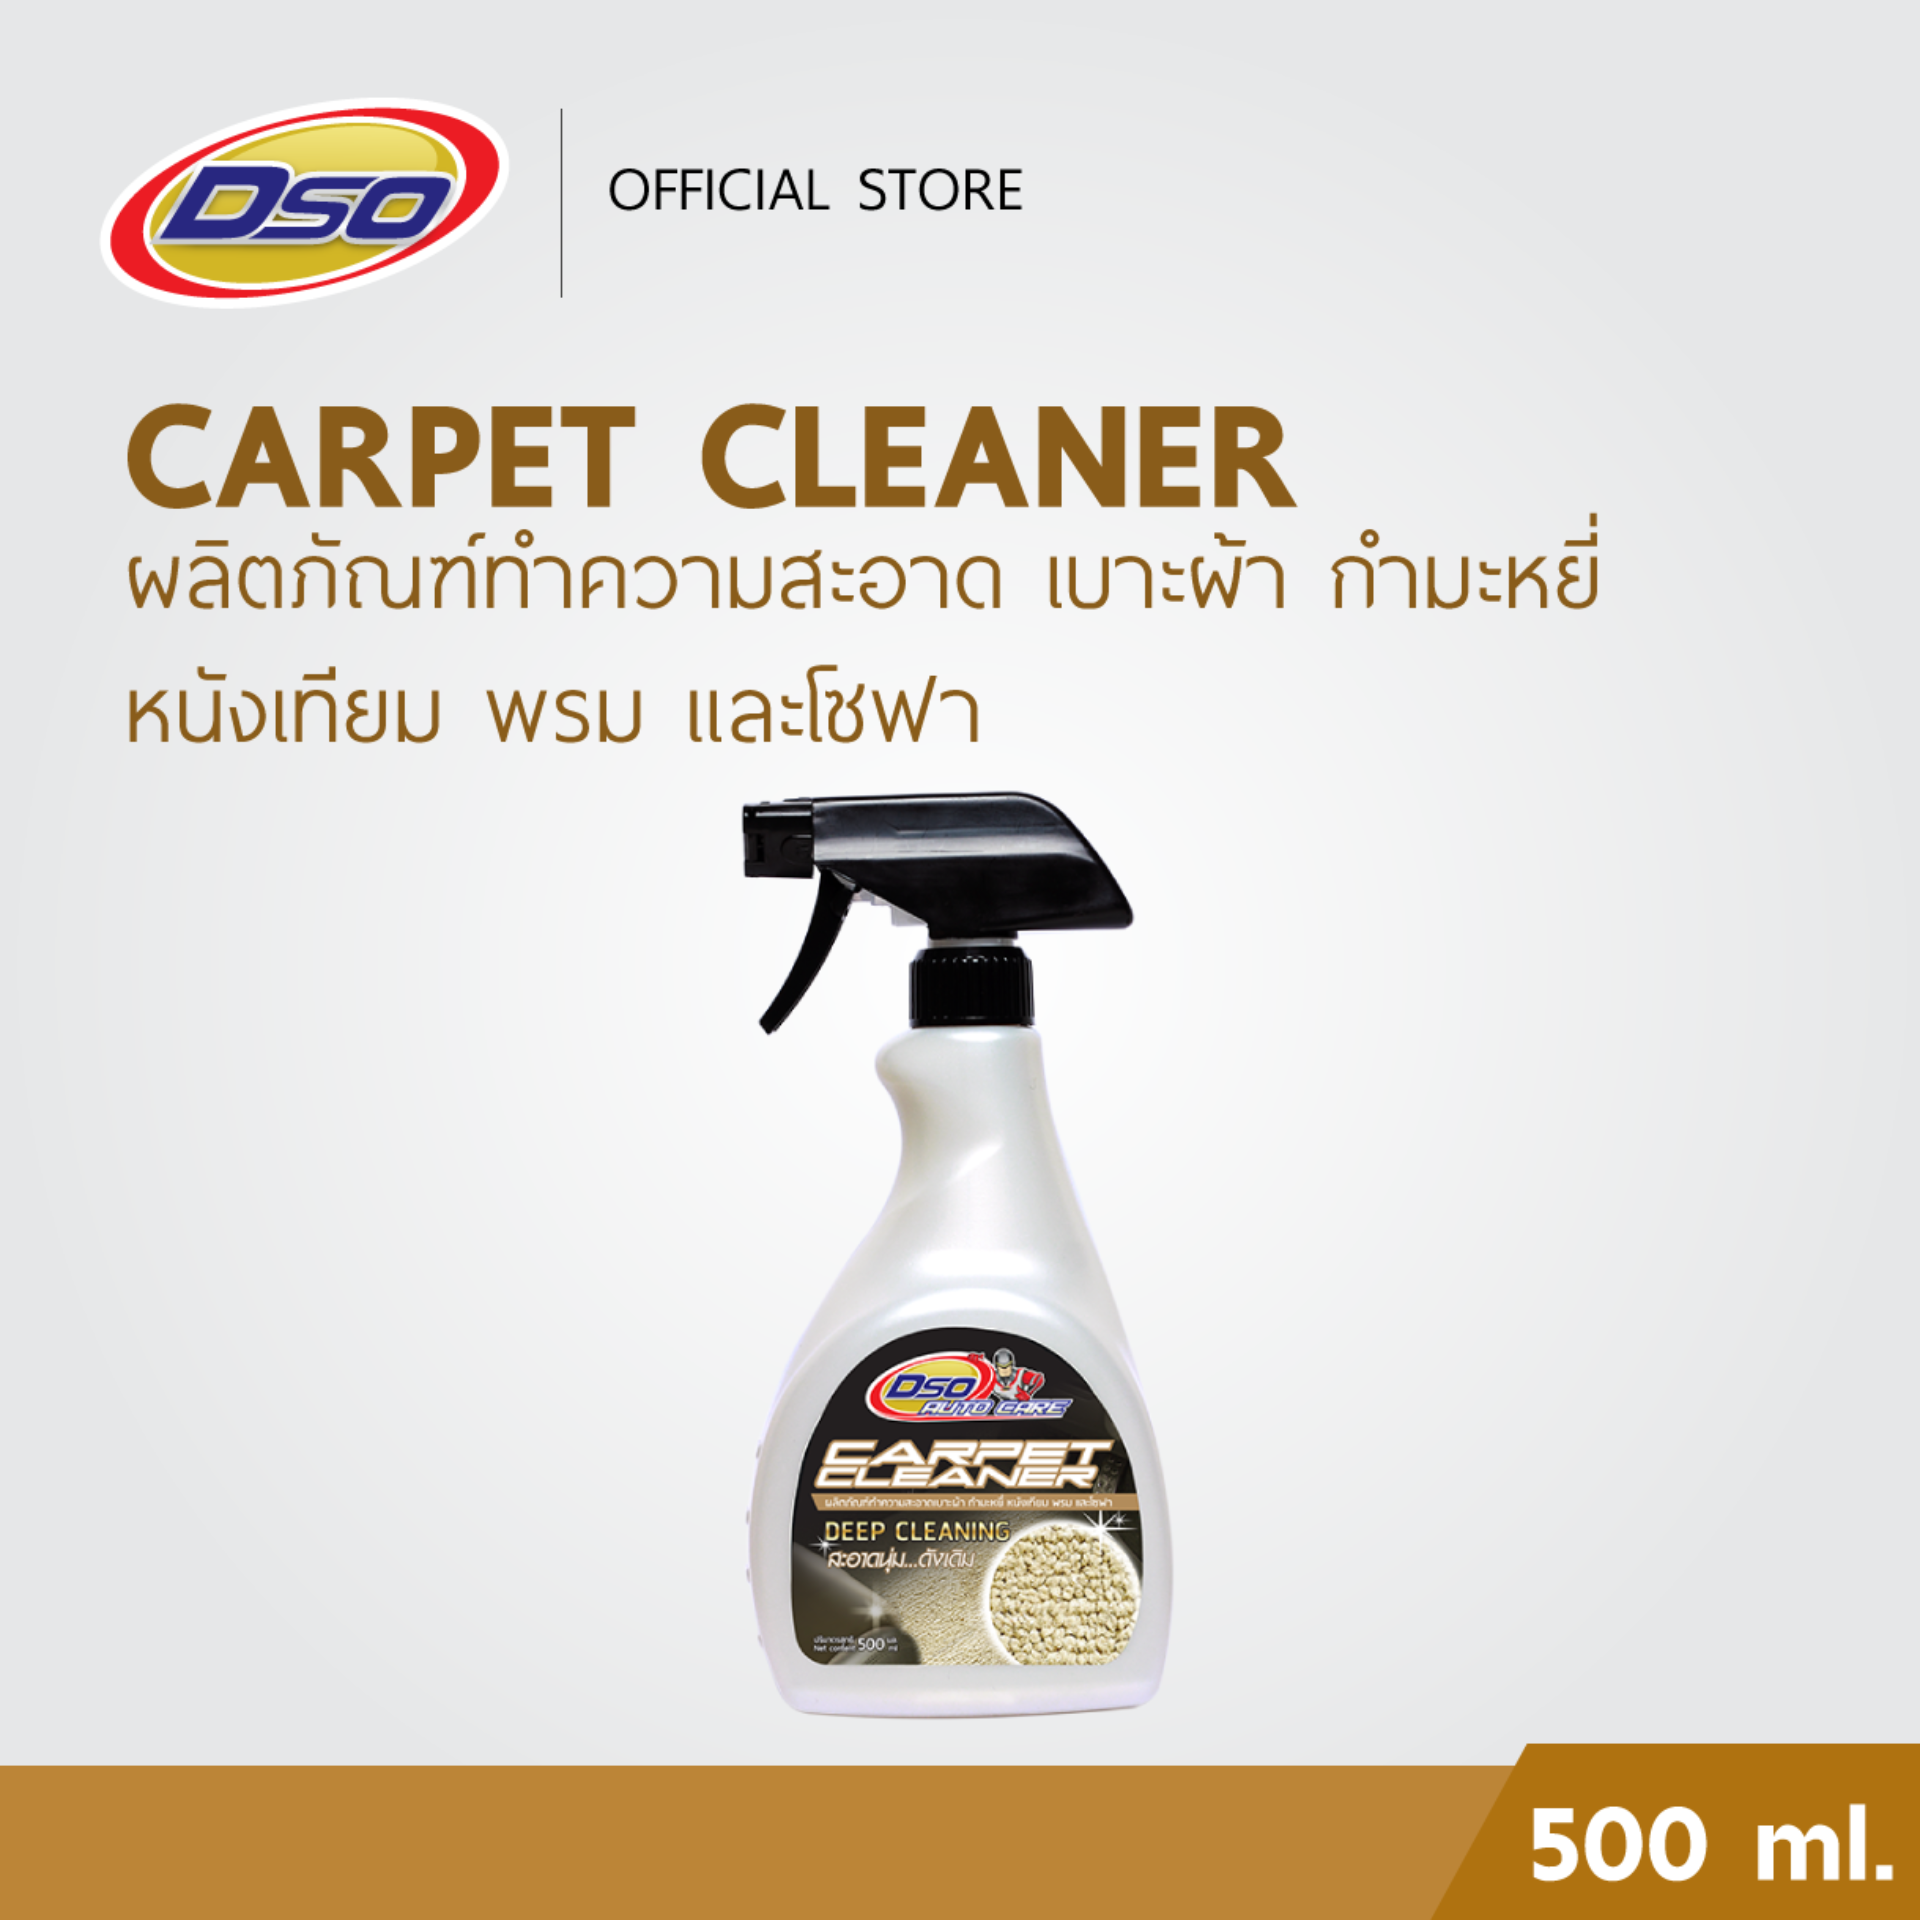 DSO ผลิตภัณฑ์ทำความสะอาดพรม เบาะผ้า กำมะหยี่ หนังเทียม และโซฟา / Carpet Cleaner 500ml.